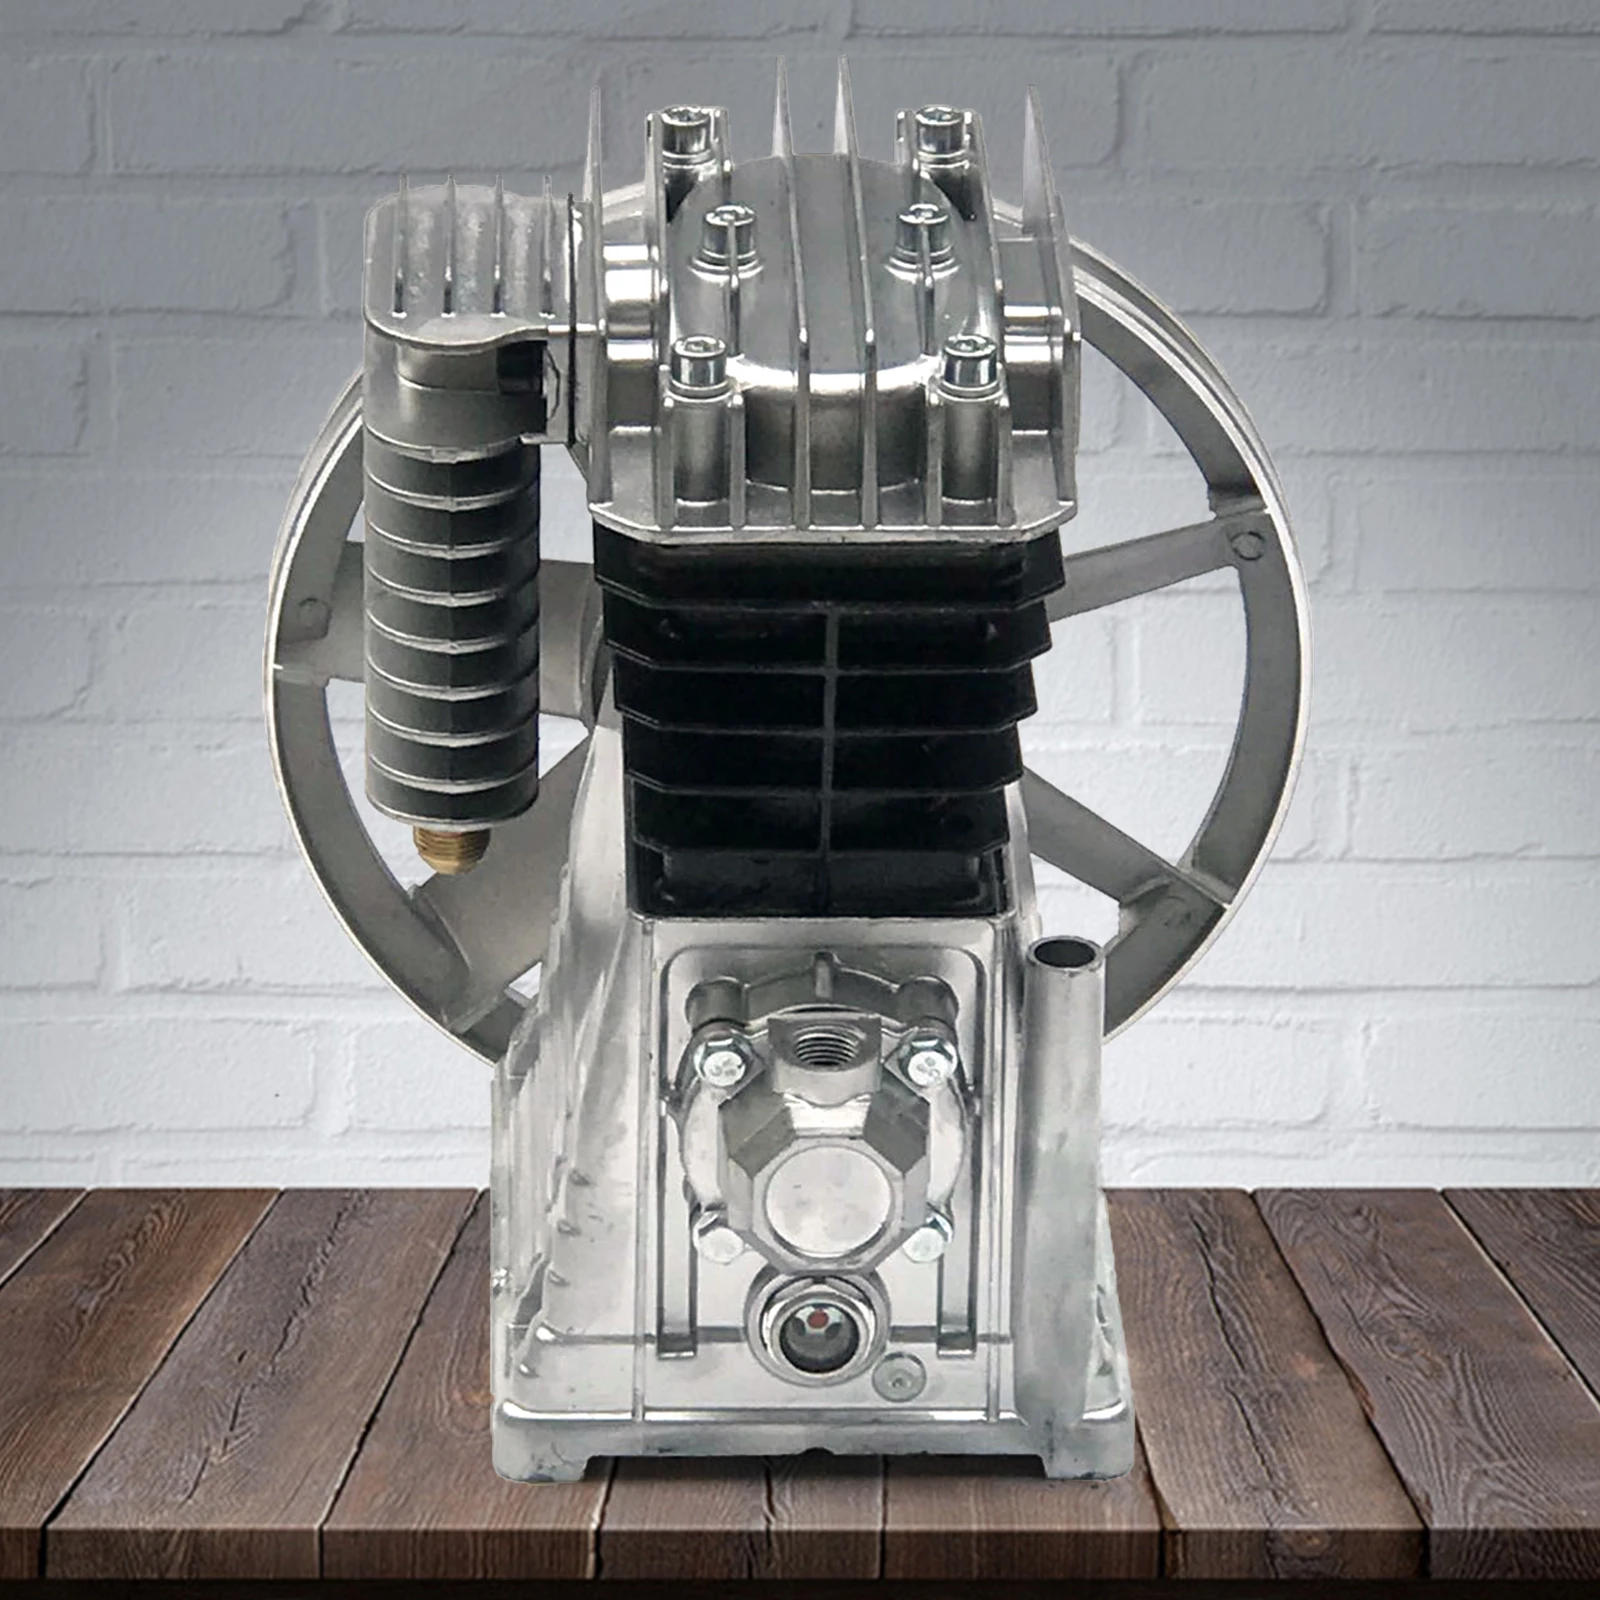 2HP 1500W Piston Twin Cylinder Air Compressor Pump Motor Head w/ Silencer